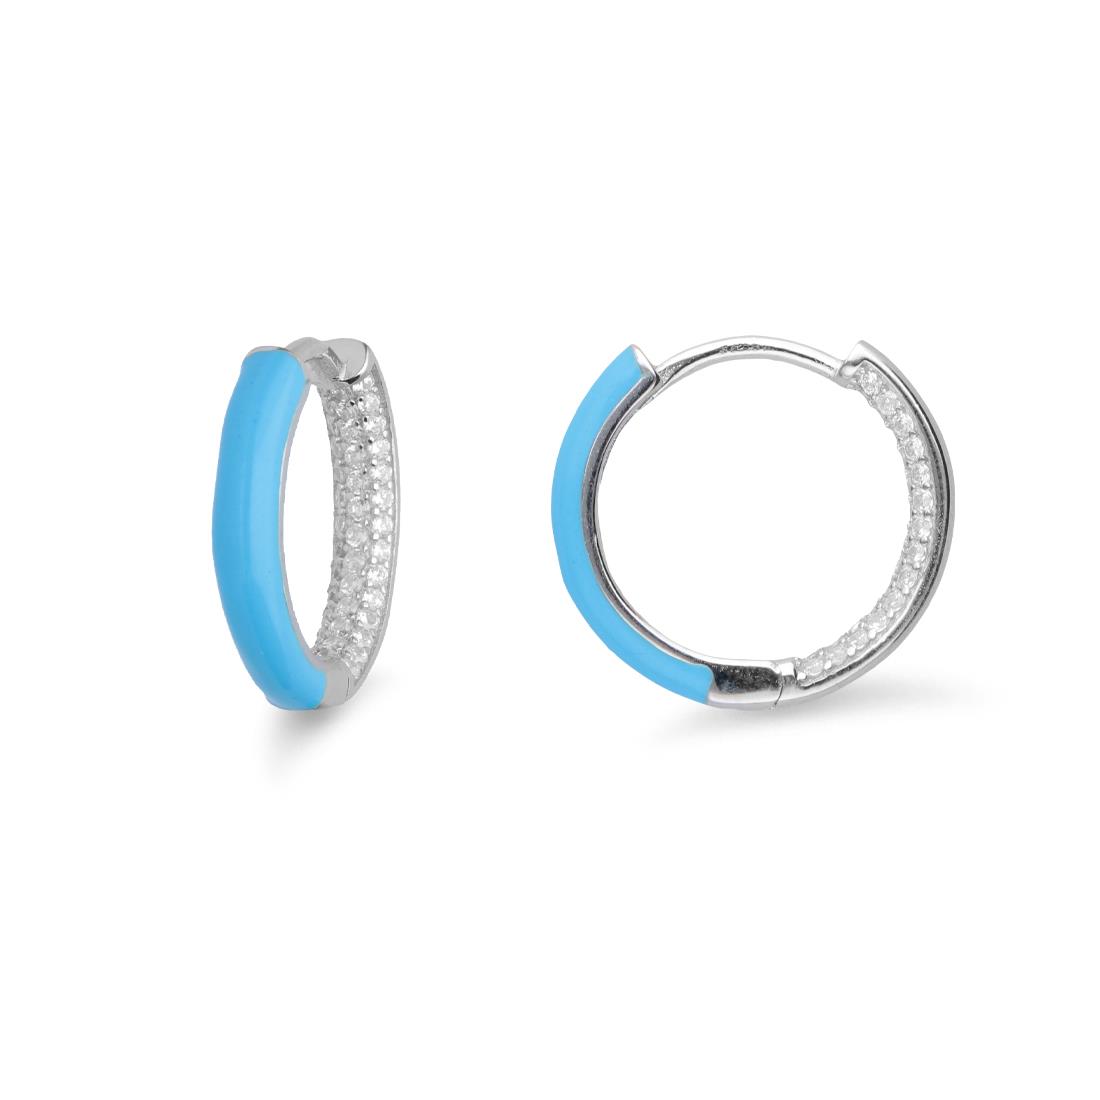 Hoop earrings in silver and blue enamel - ORO&CO 925